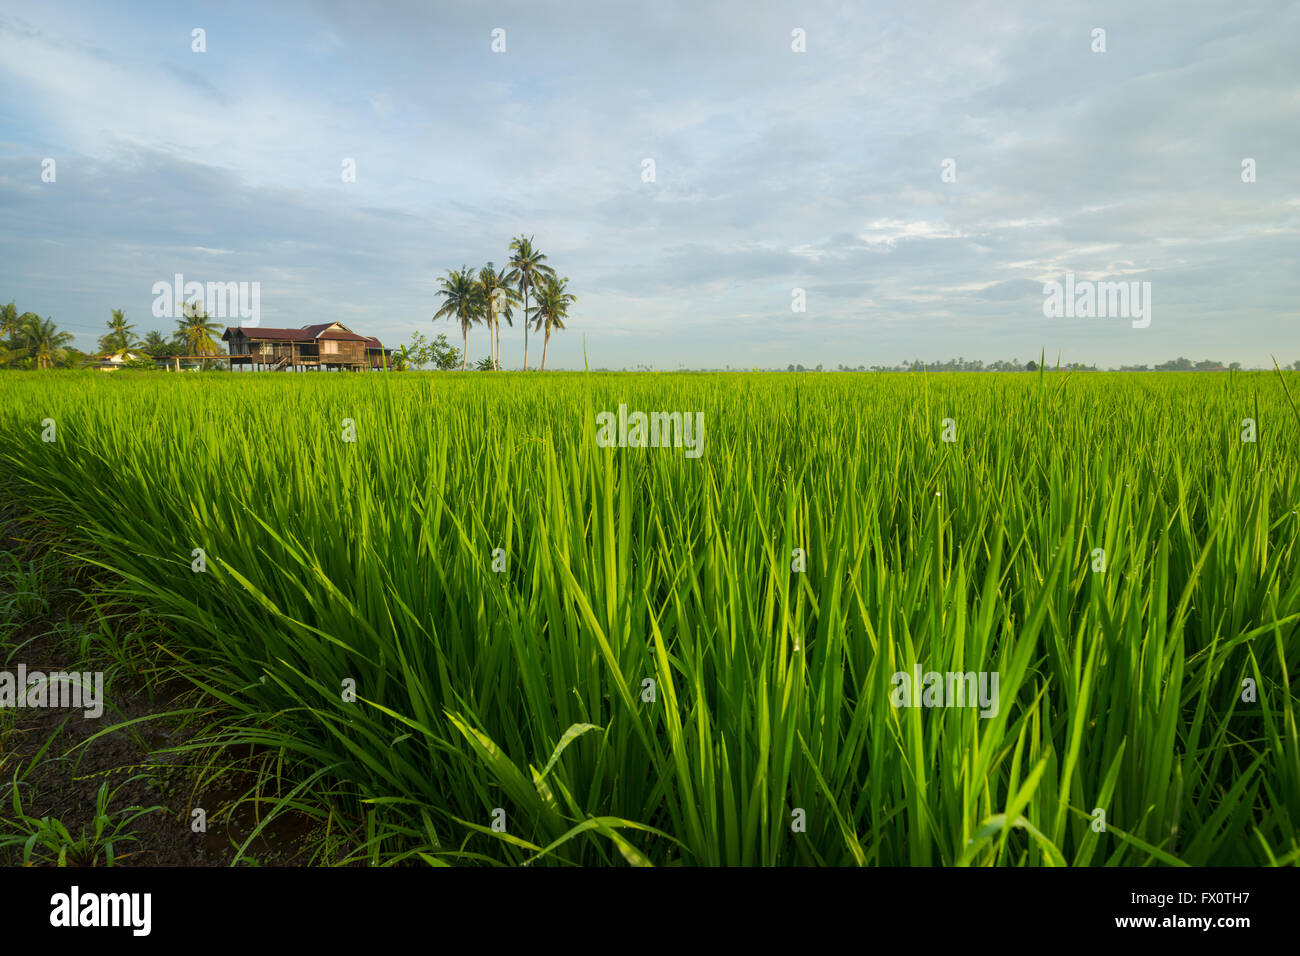 Hình ảnh về rau cỏ xanh tươi trên nền cánh đồng lúa ở Selangor, Malaysia sẽ khiến bạn chú ý ngay từ cái nhìn đầu tiên. Với màu sắc tươi sáng, đặc biệt là trong bối cảnh xanh tươi của cánh đồng lúa, bạn sẽ cảm nhận được sự tươi mát cũng như sự tươi mới của rau cỏ này. Hãy xem hình ảnh để nhận được cảm hứng mới phục vụ cho bữa ăn của bạn!